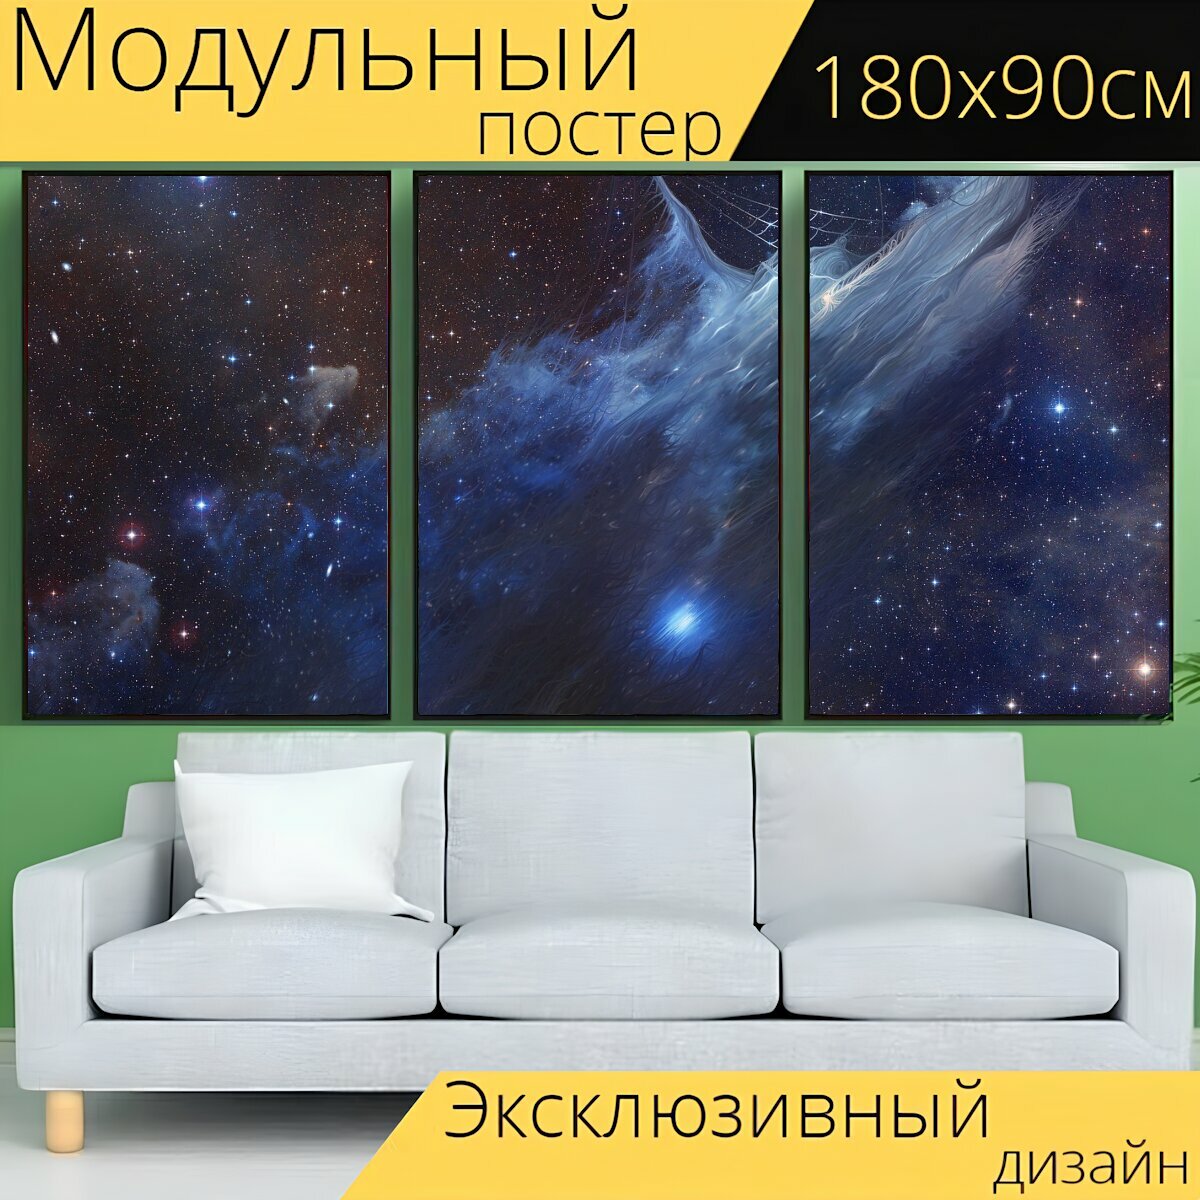 Модульный постер "Космический корабль, звезда, наса" 180 x 90 см. для интерьера